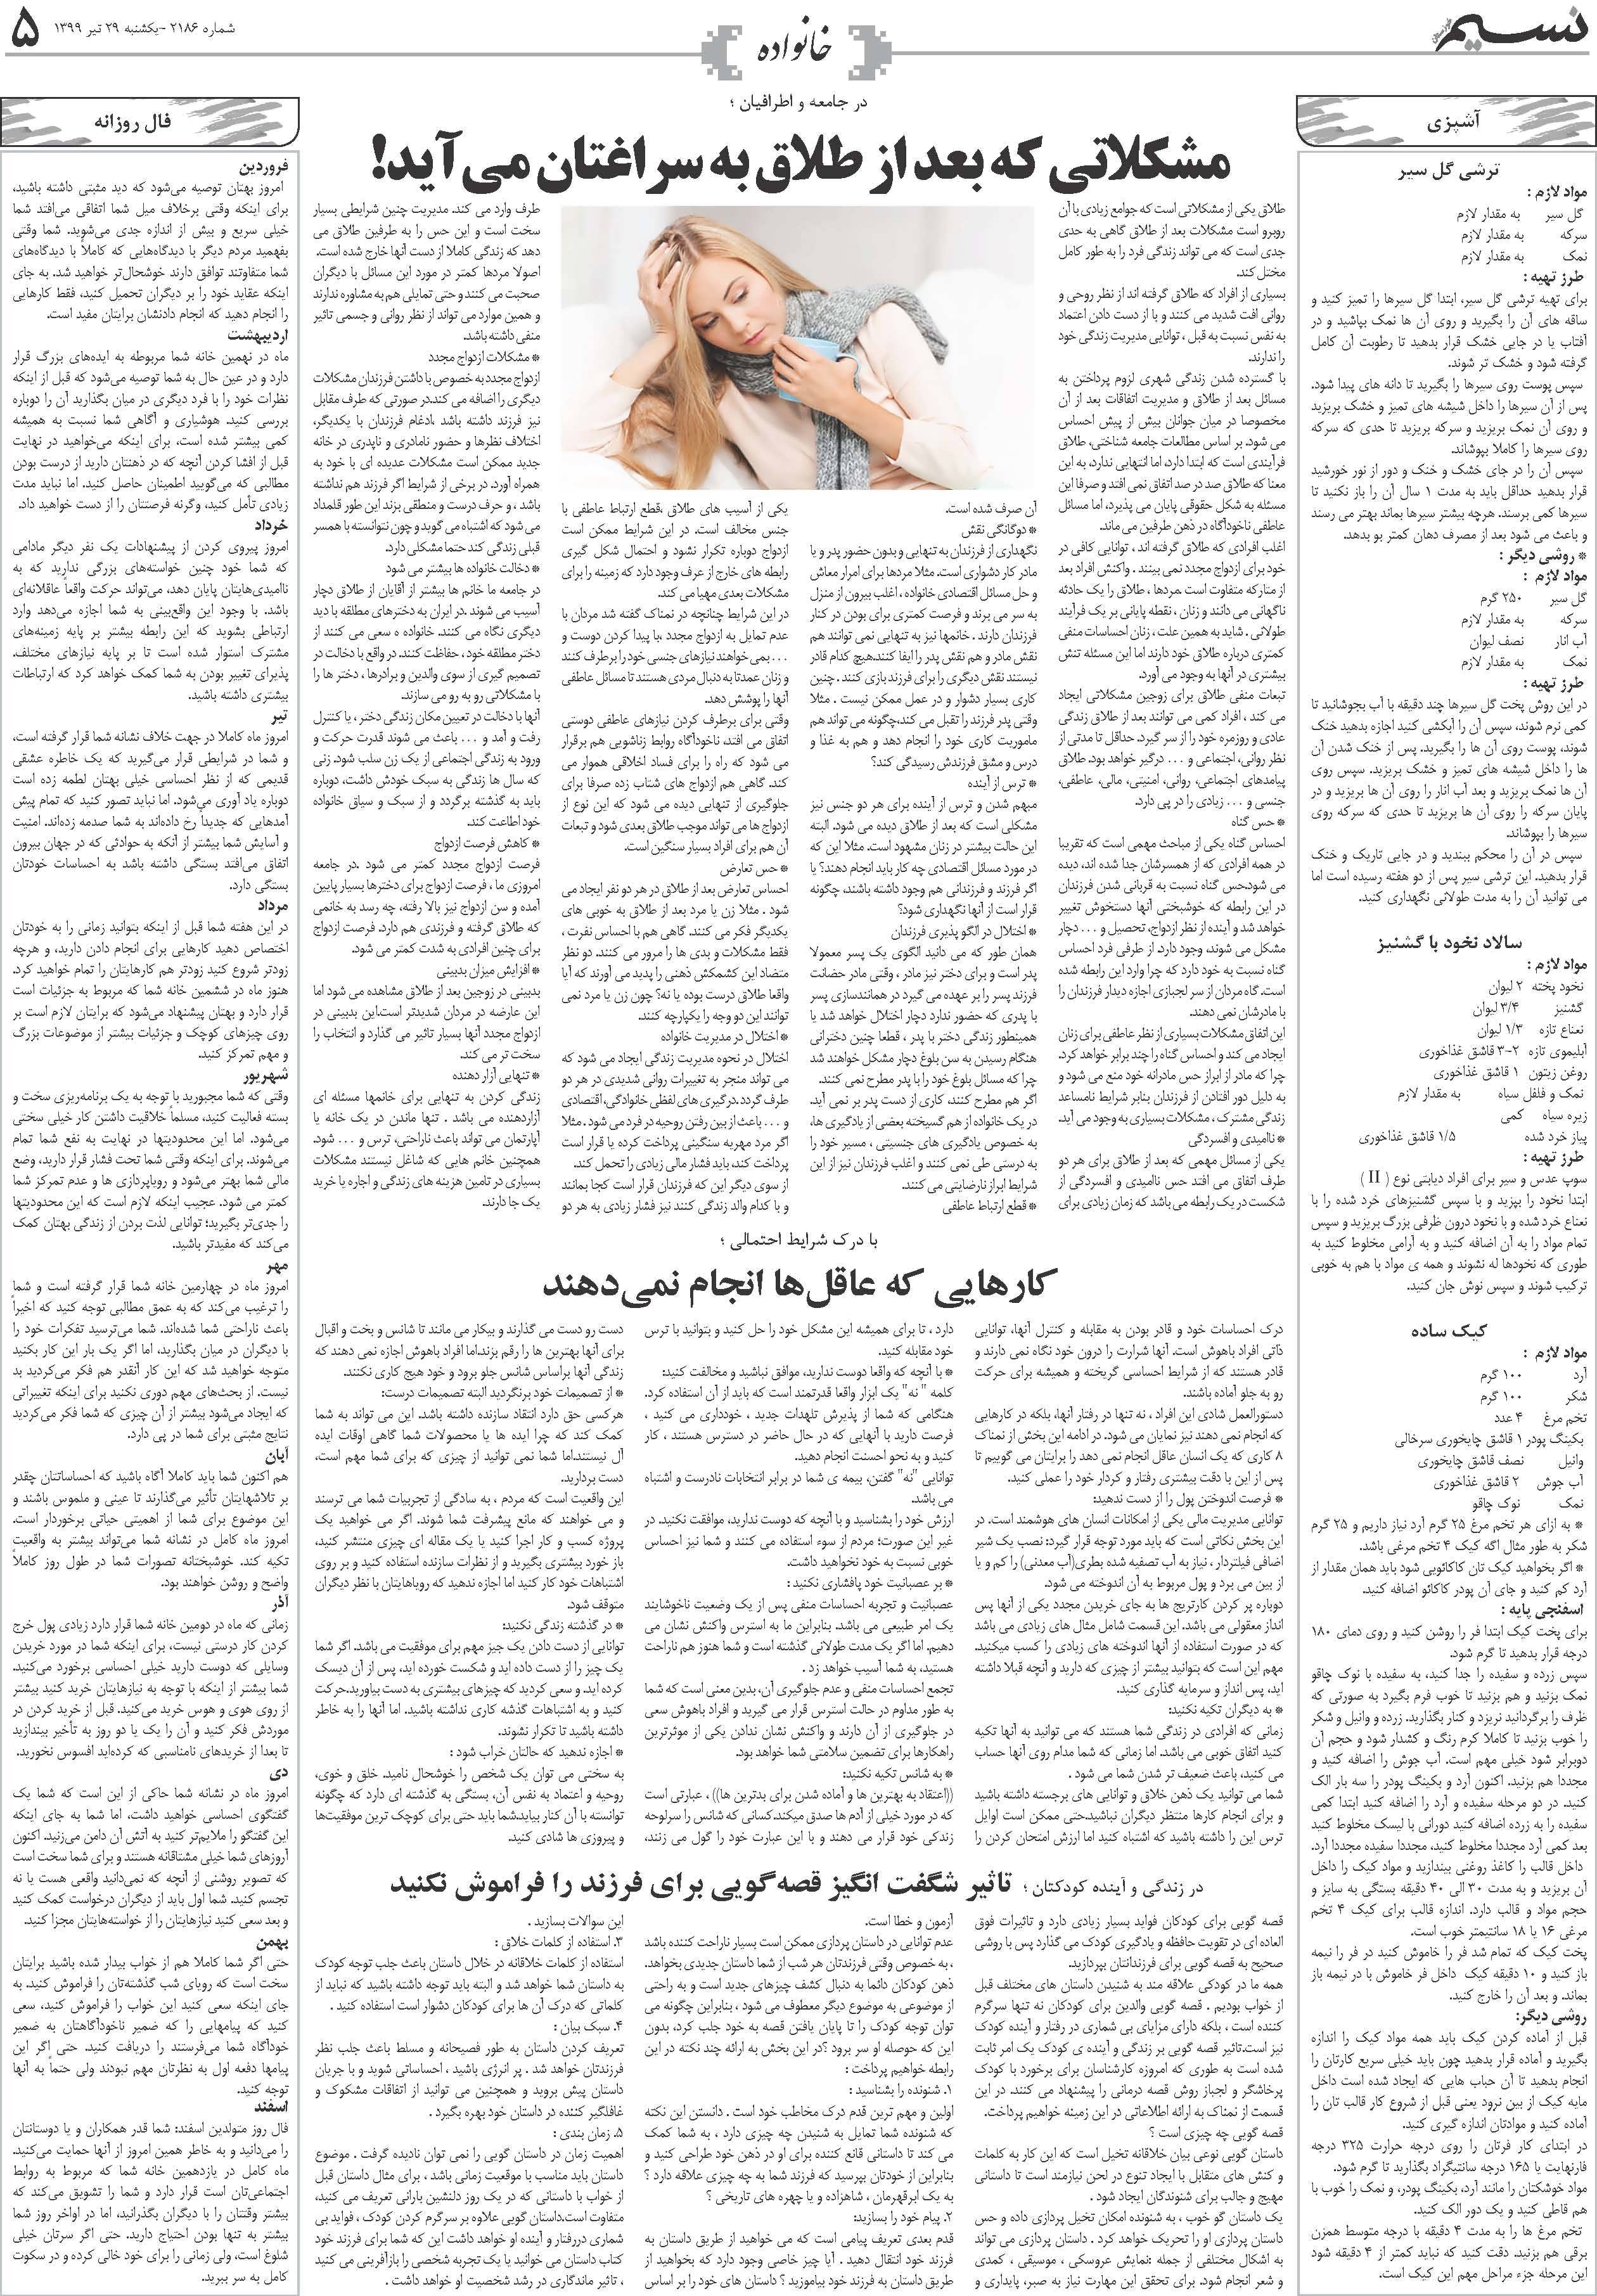 صفحه خانواده روزنامه نسیم شماره 2186